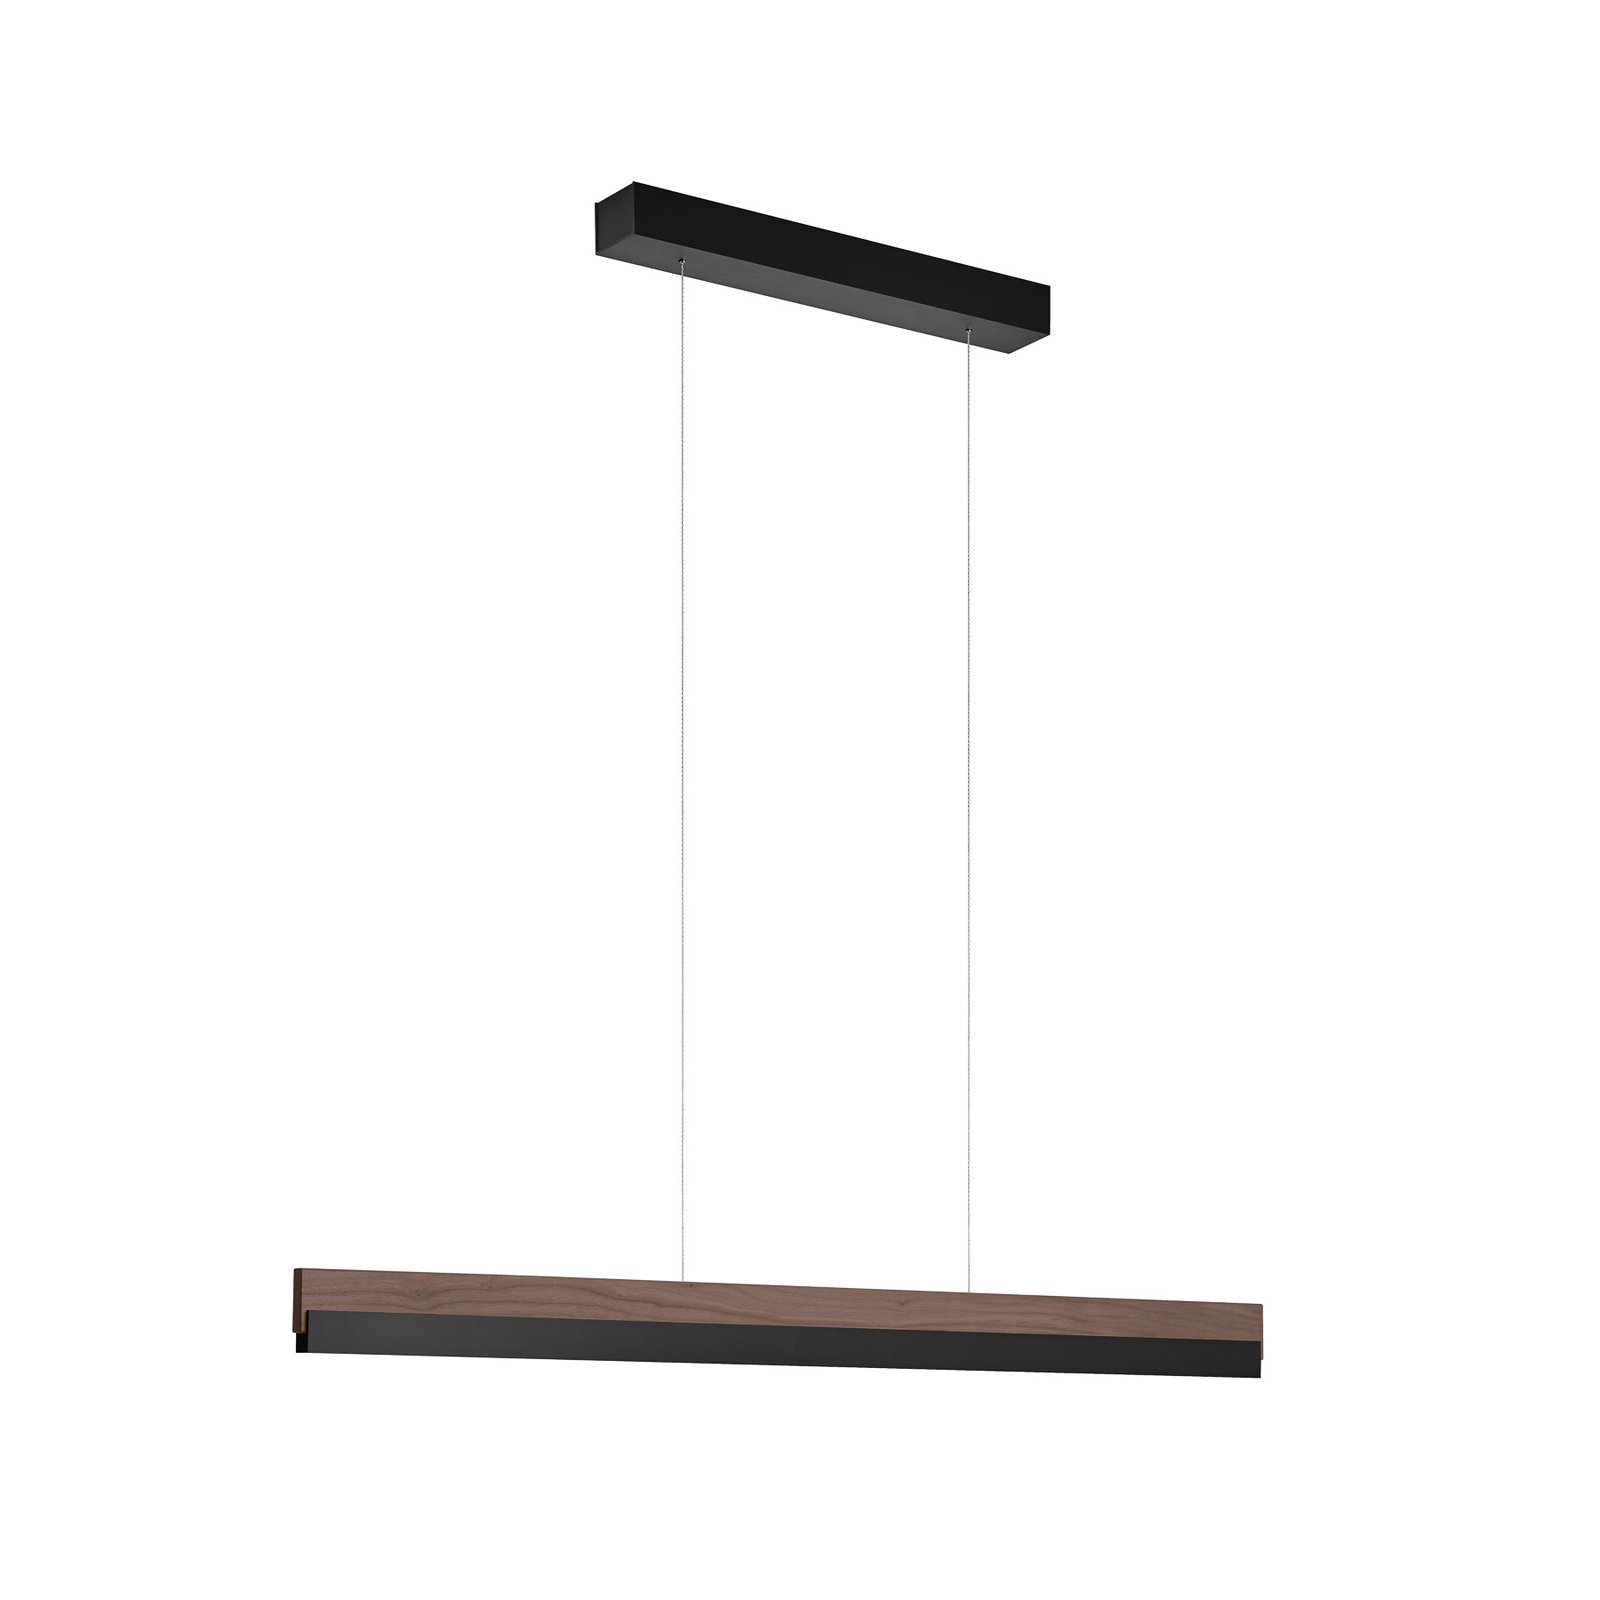 Quitani hanglamp Keijo, zwart/noot, 103 cm